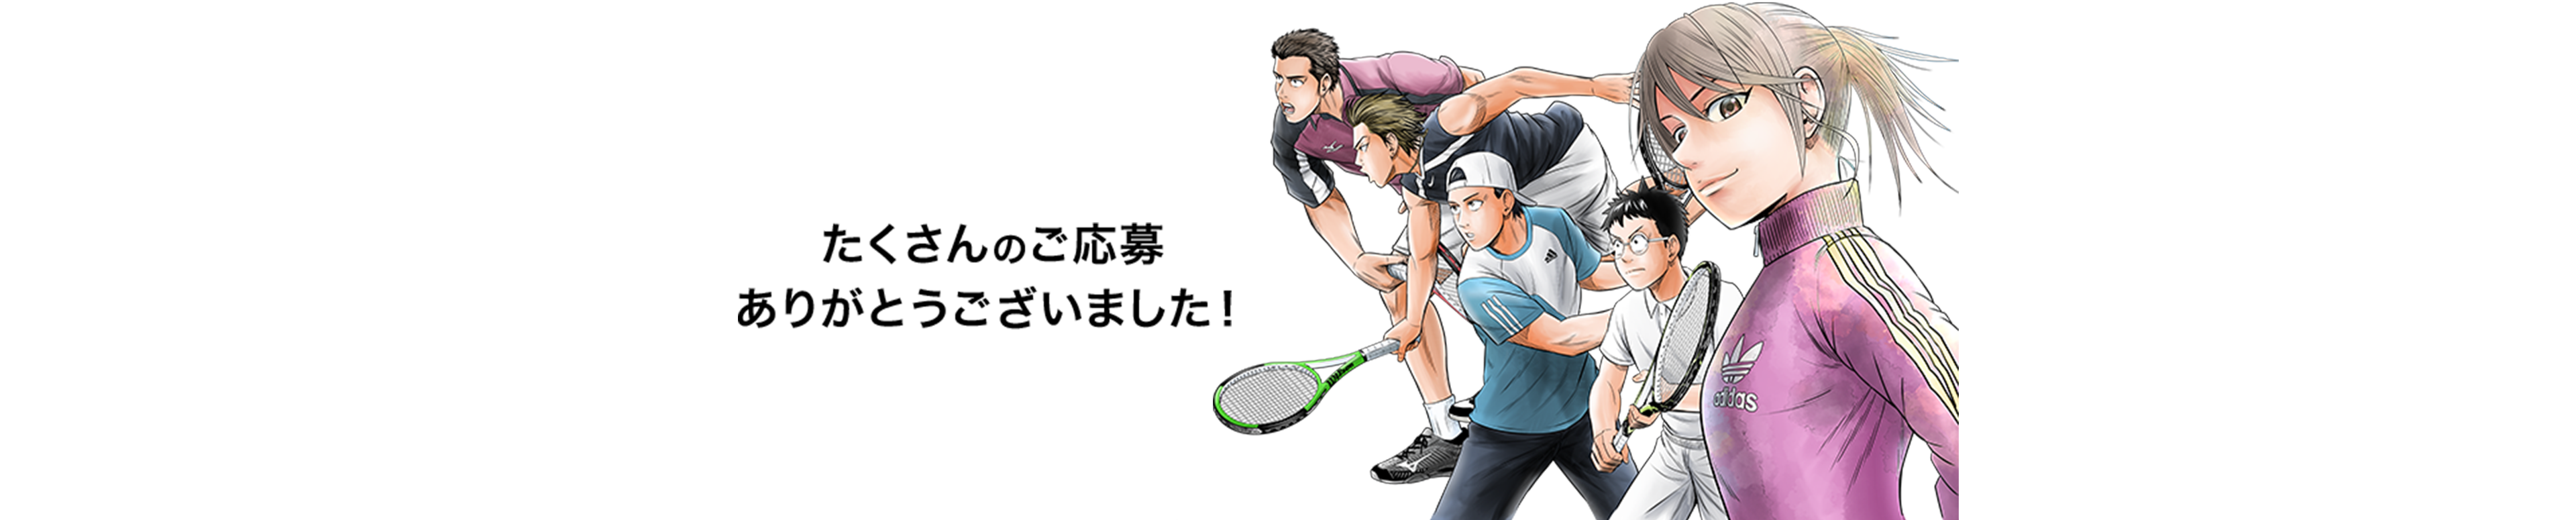 イラストコンテスト入賞作品発表 Break Back テニス365 Tennis365 Net